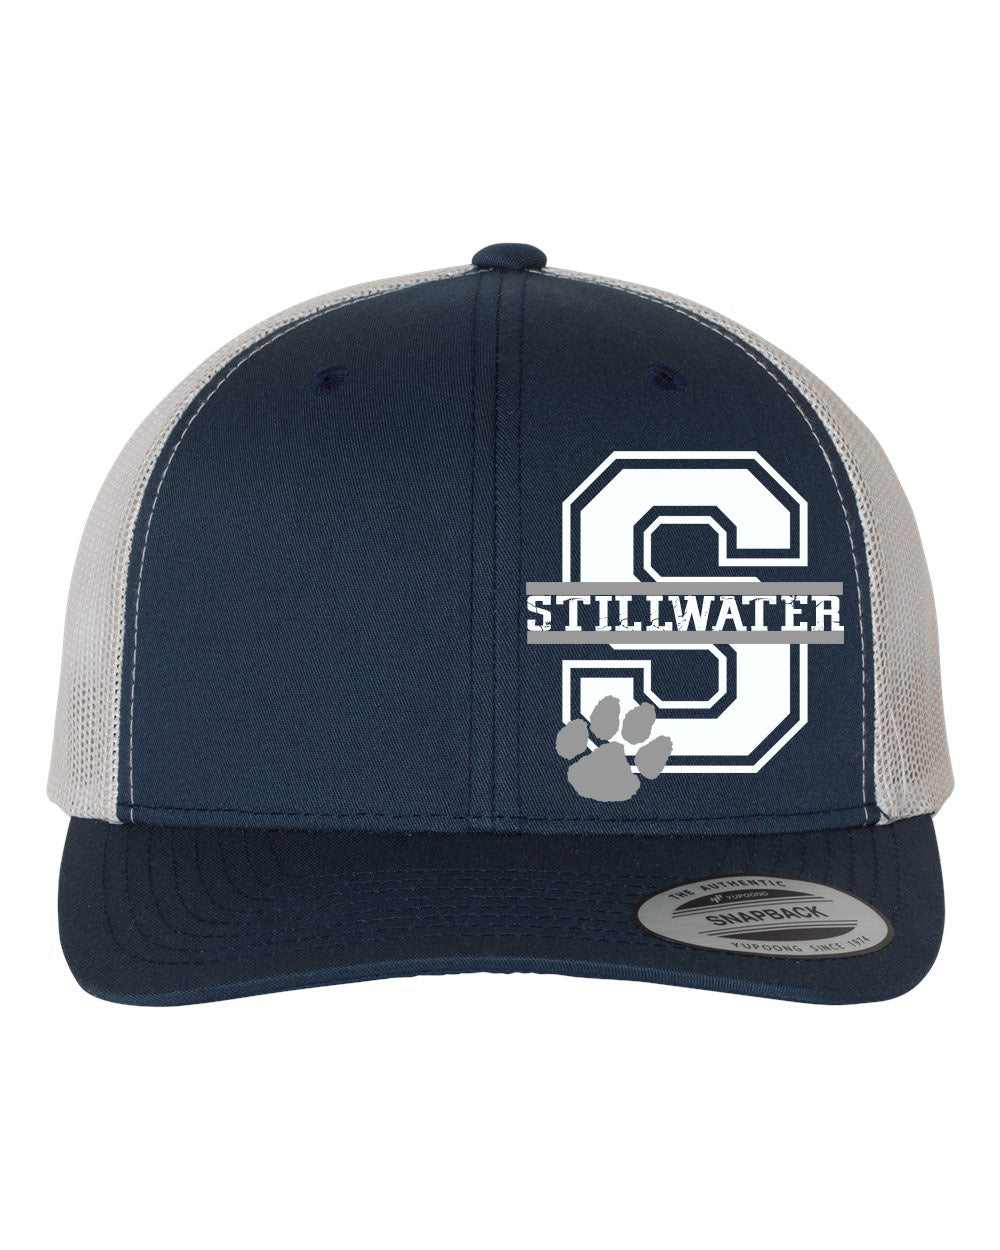 Stillwater Design 15 Trucker Hat